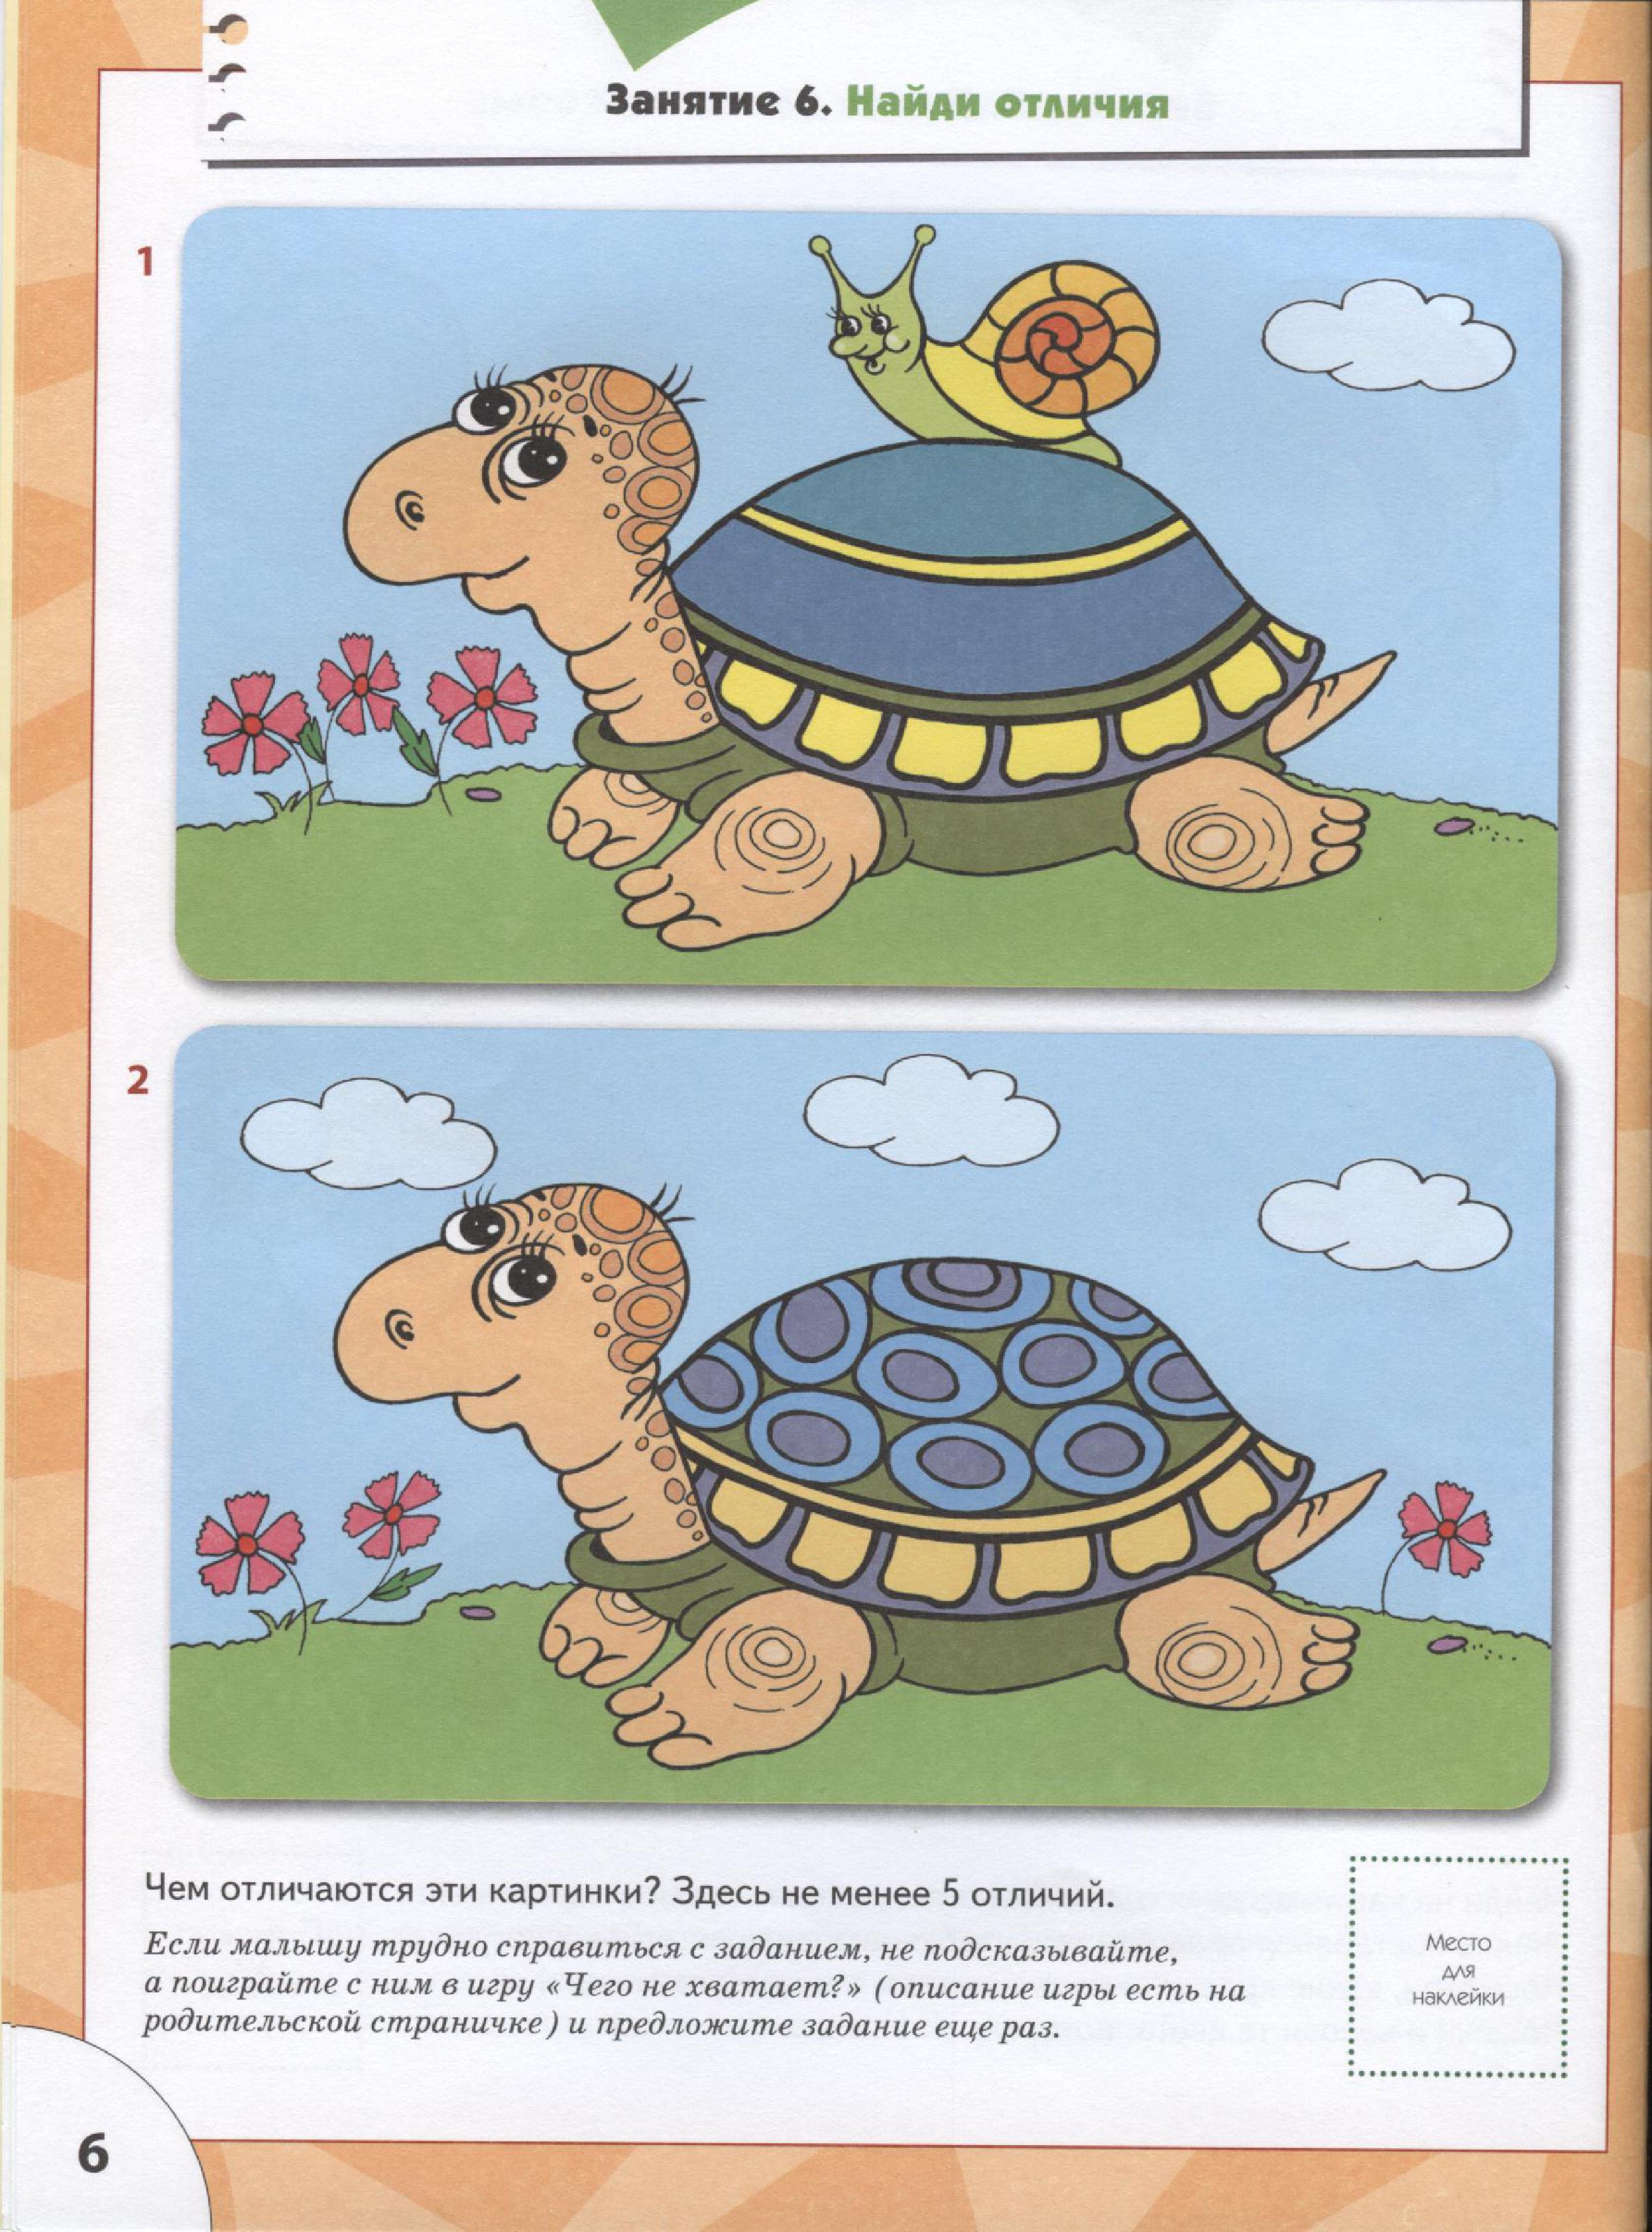 Больше меньше различие. Задания с черепахами для дошкольников. Развивающие занятия для малышей. Занятия для детей 3 лет для развития. Обучающие задания для детей 3-4 лет.